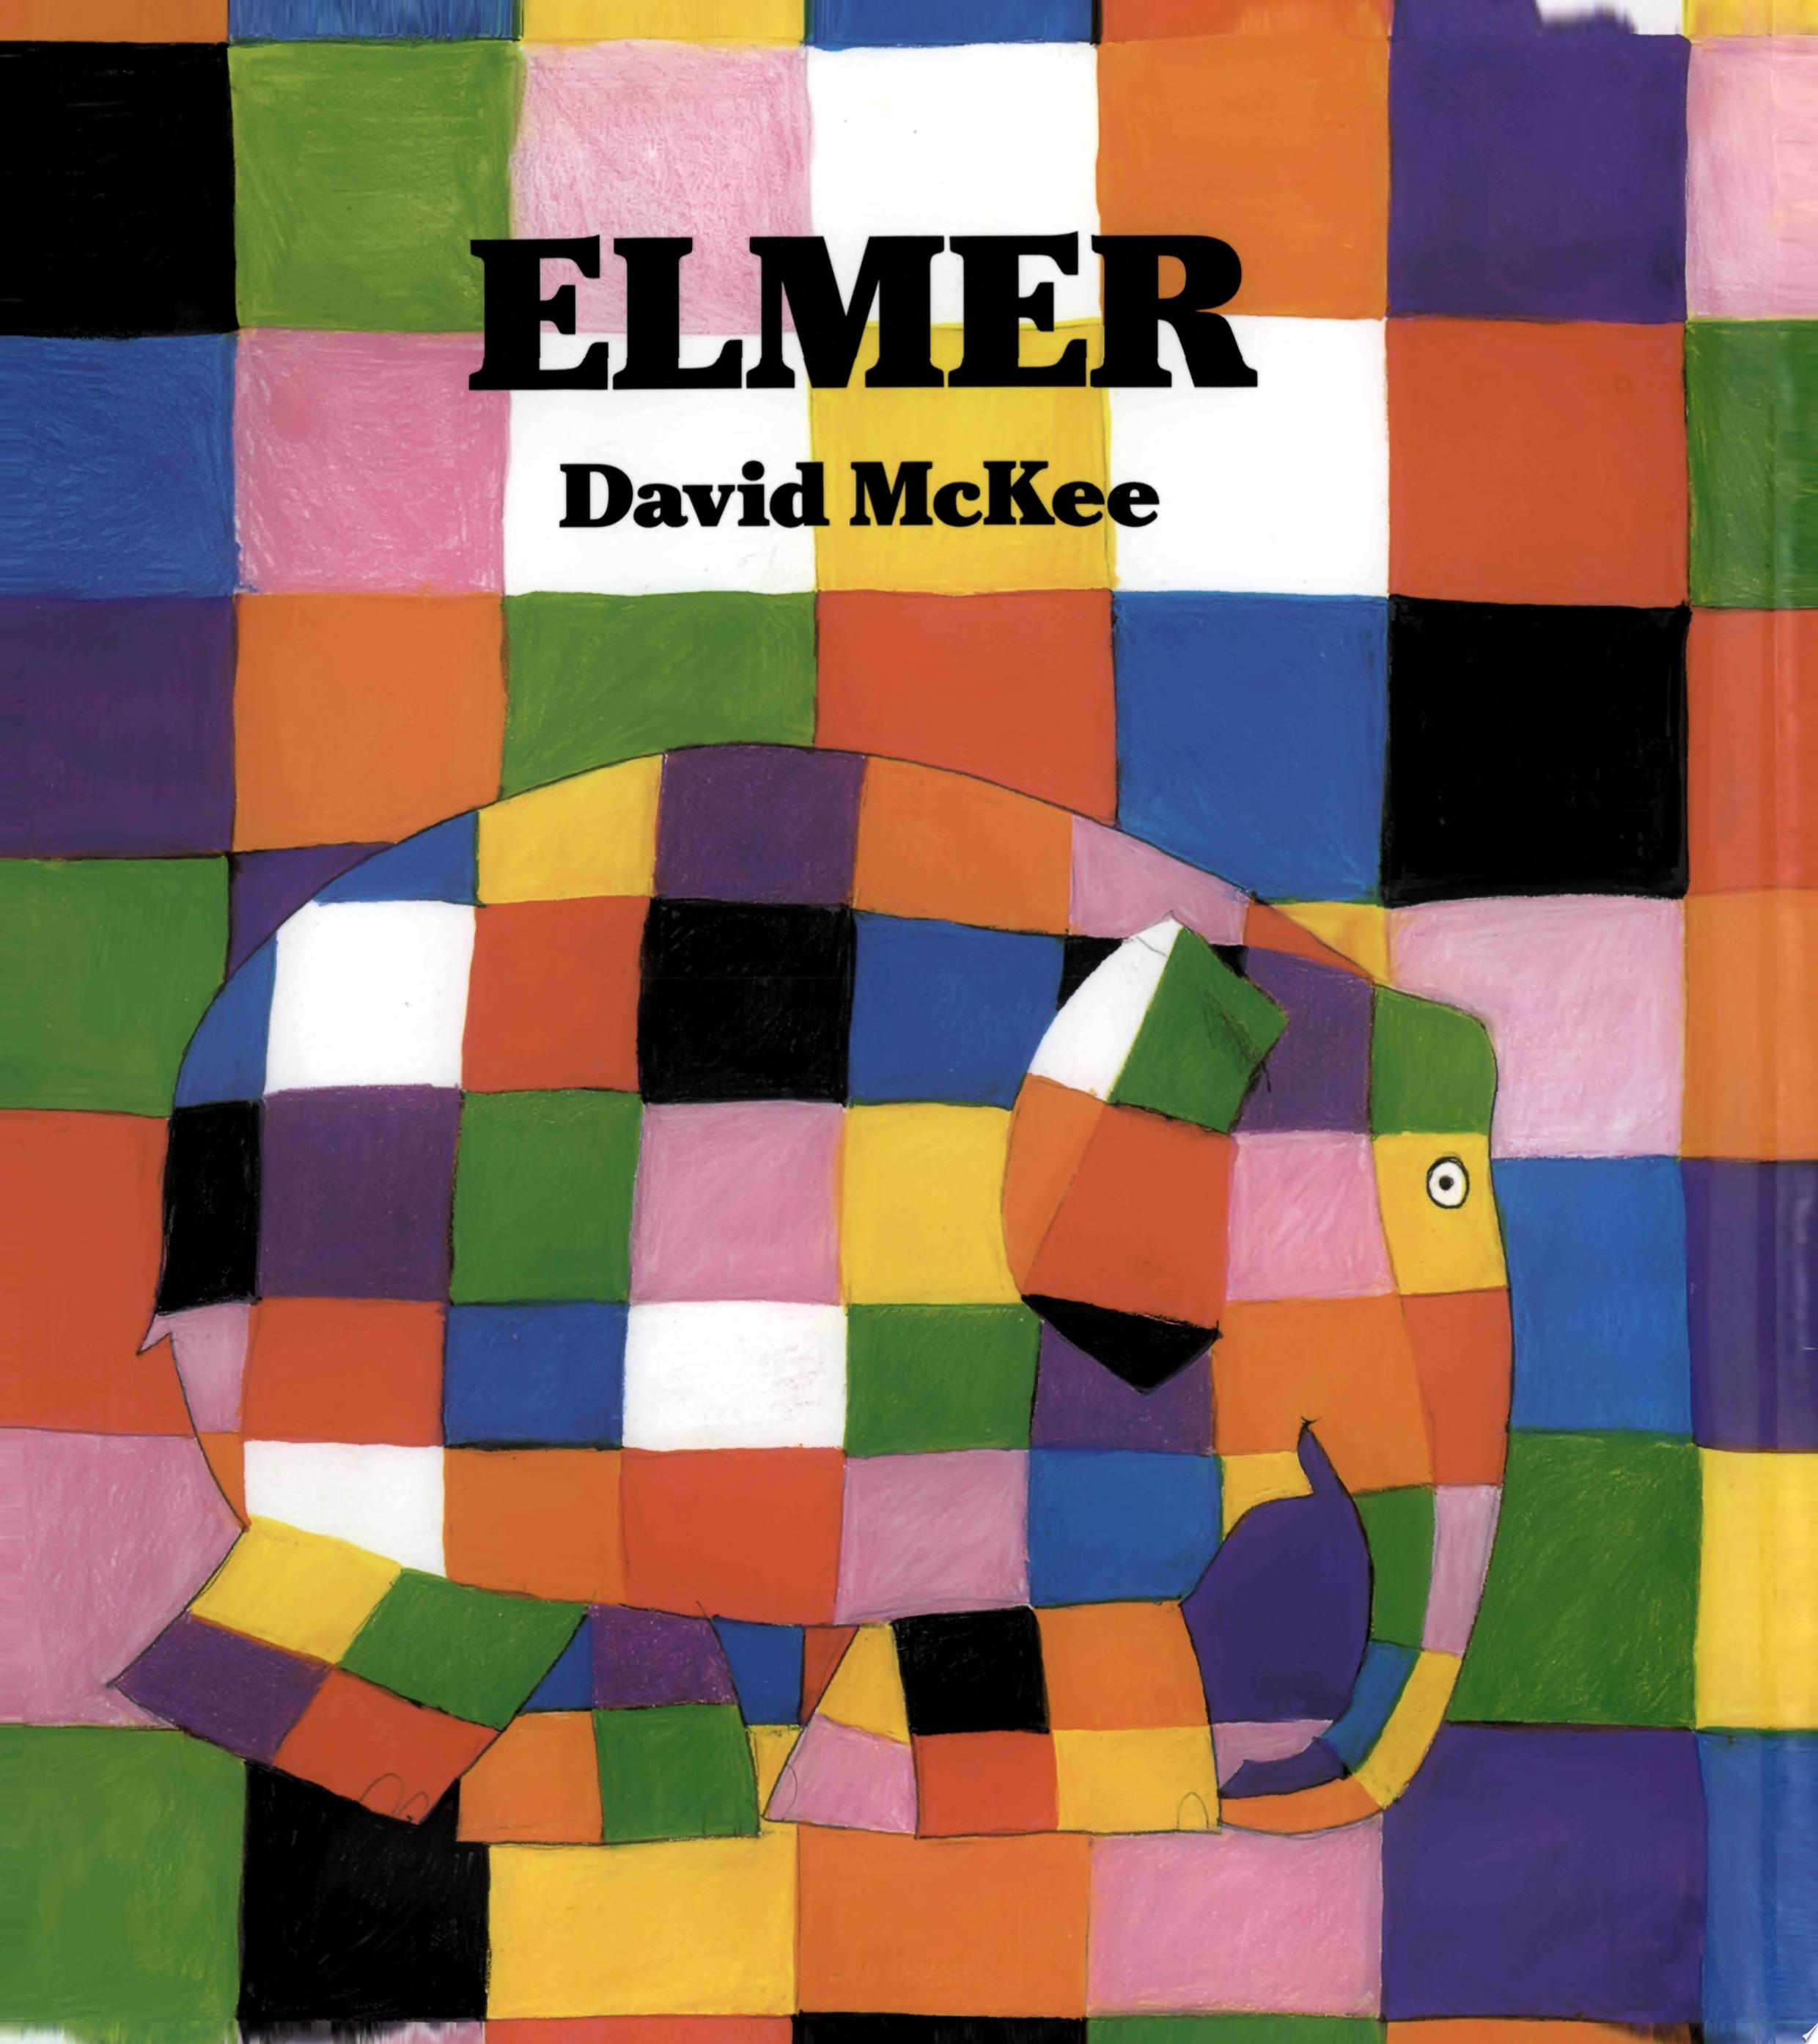 Image for "Elmer"